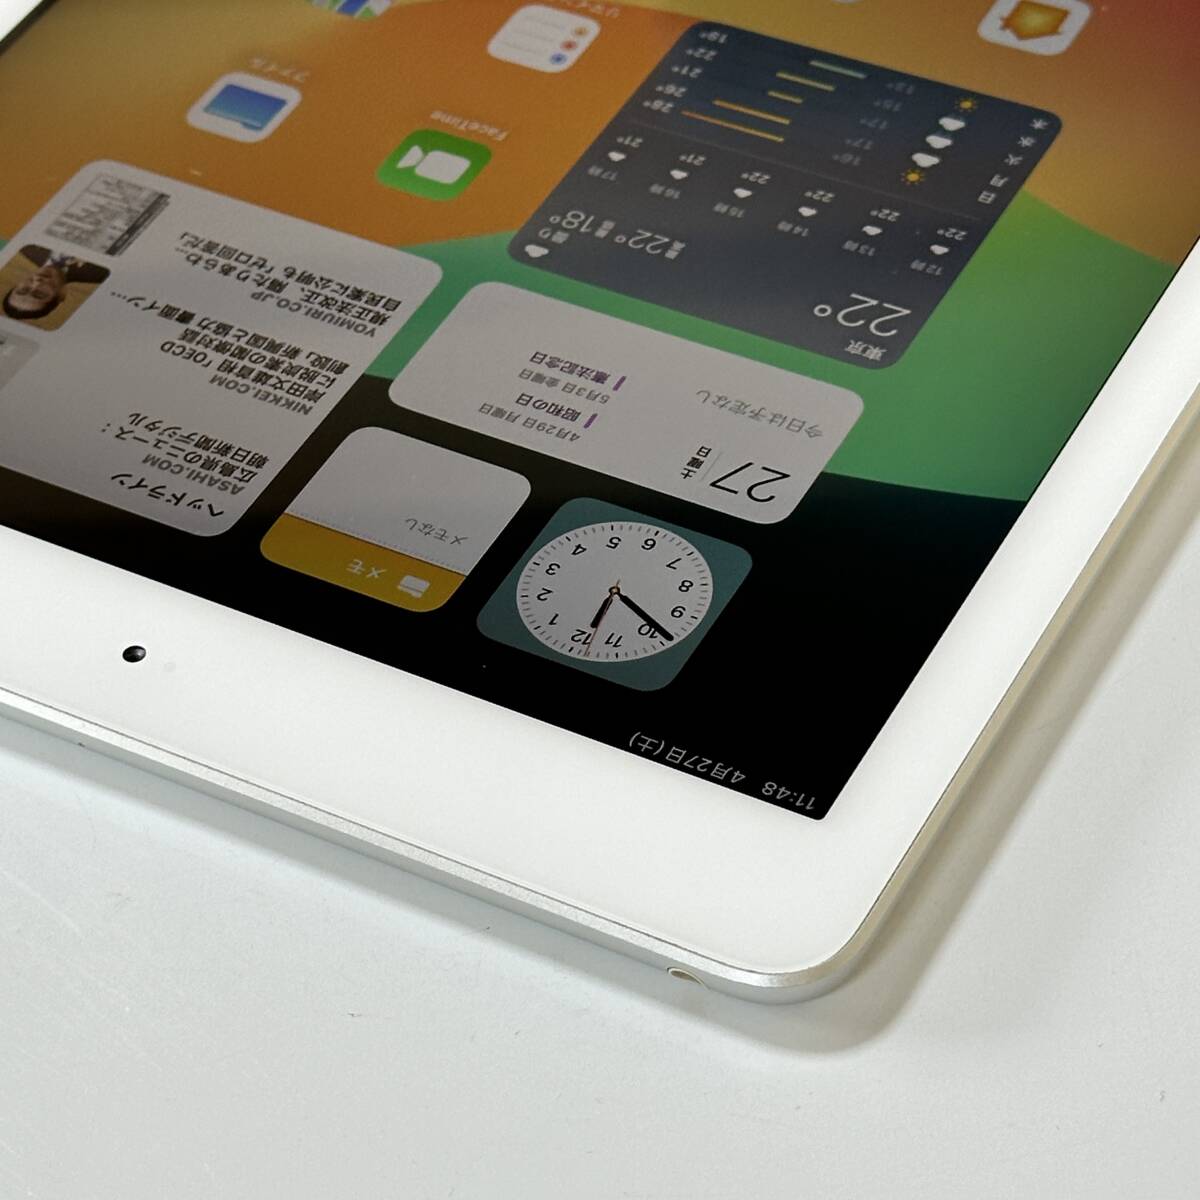 ( прекрасный товар ) Apple iPad ( no. 6 поколение ) серебряный 32GB MR7G2J/A Wi-Fi модель iOS17.4.1 Acty беж .n разблокирован 